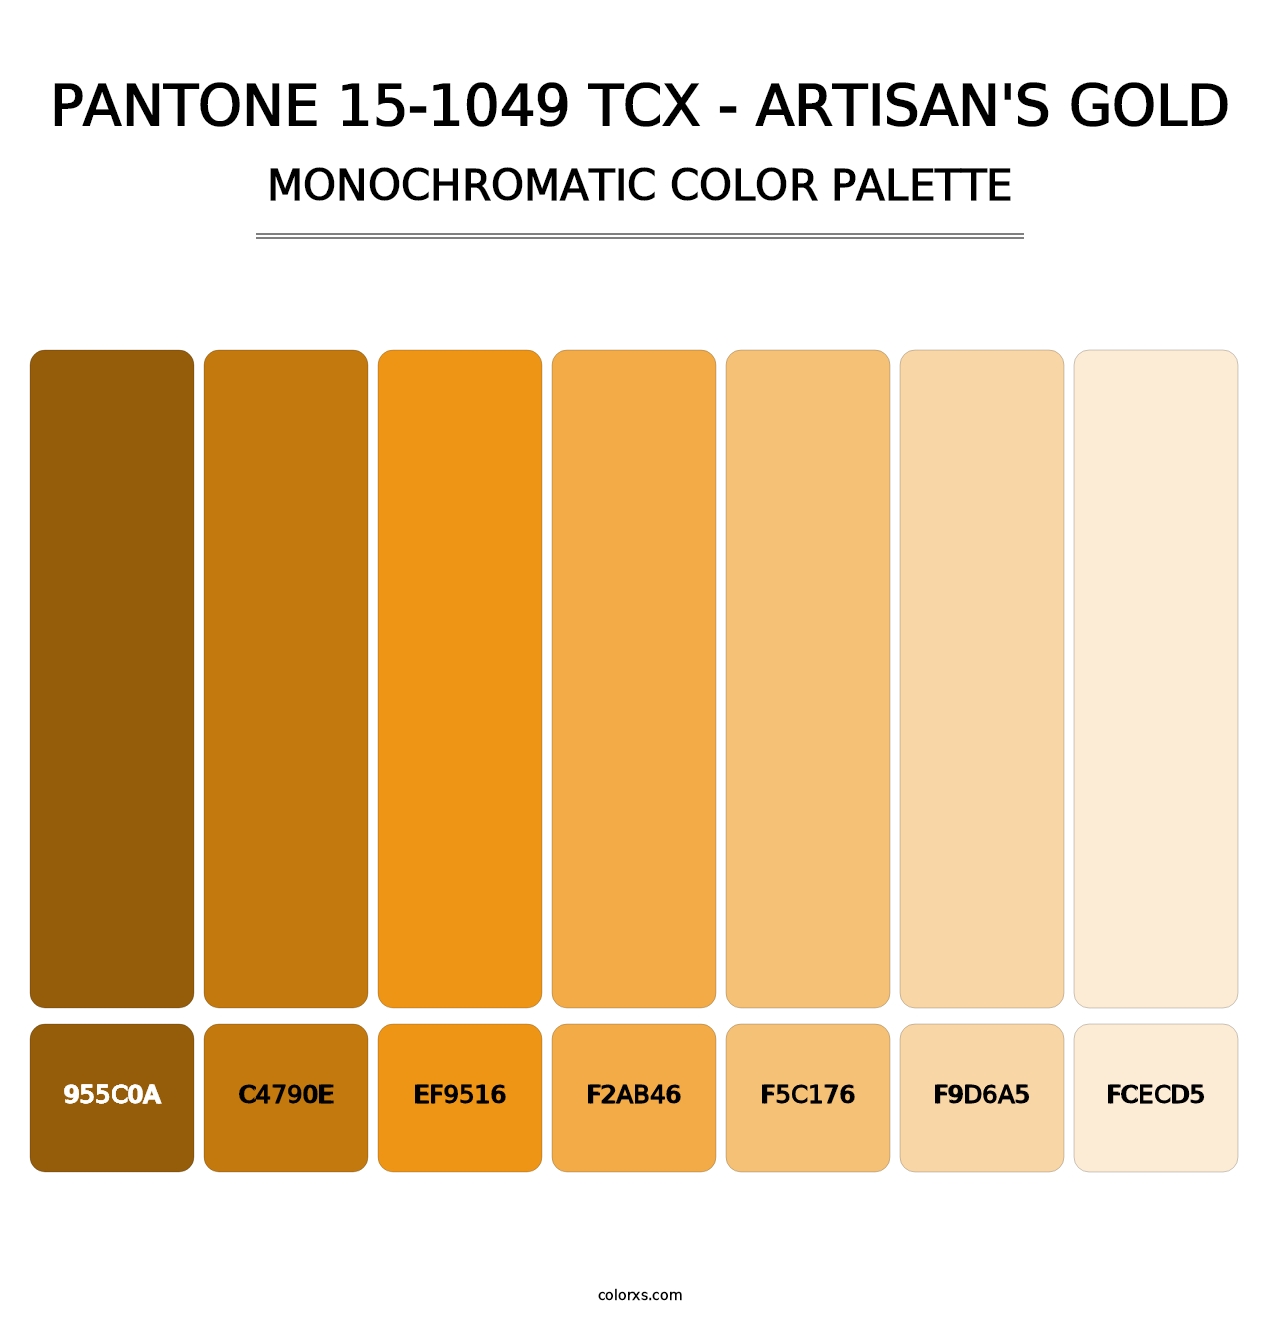 PANTONE 15-1049 TCX - Artisan's Gold - Monochromatic Color Palette